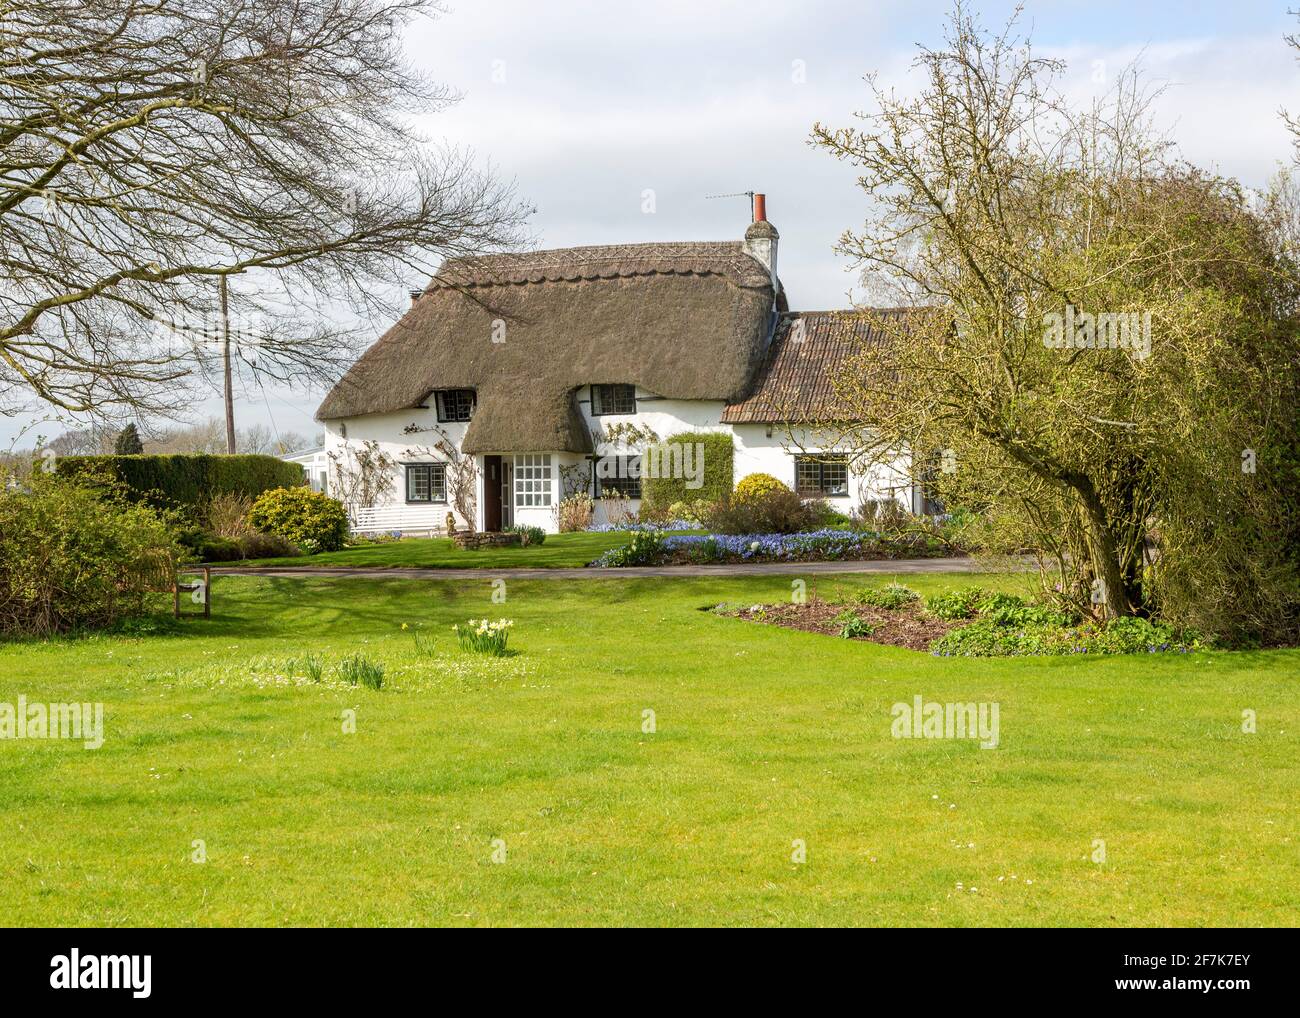 Jolie maison de campagne blanchie à la chaux au printemps, Cherhill, Wiltshire, Angleterre, Royaume-Uni Banque D'Images